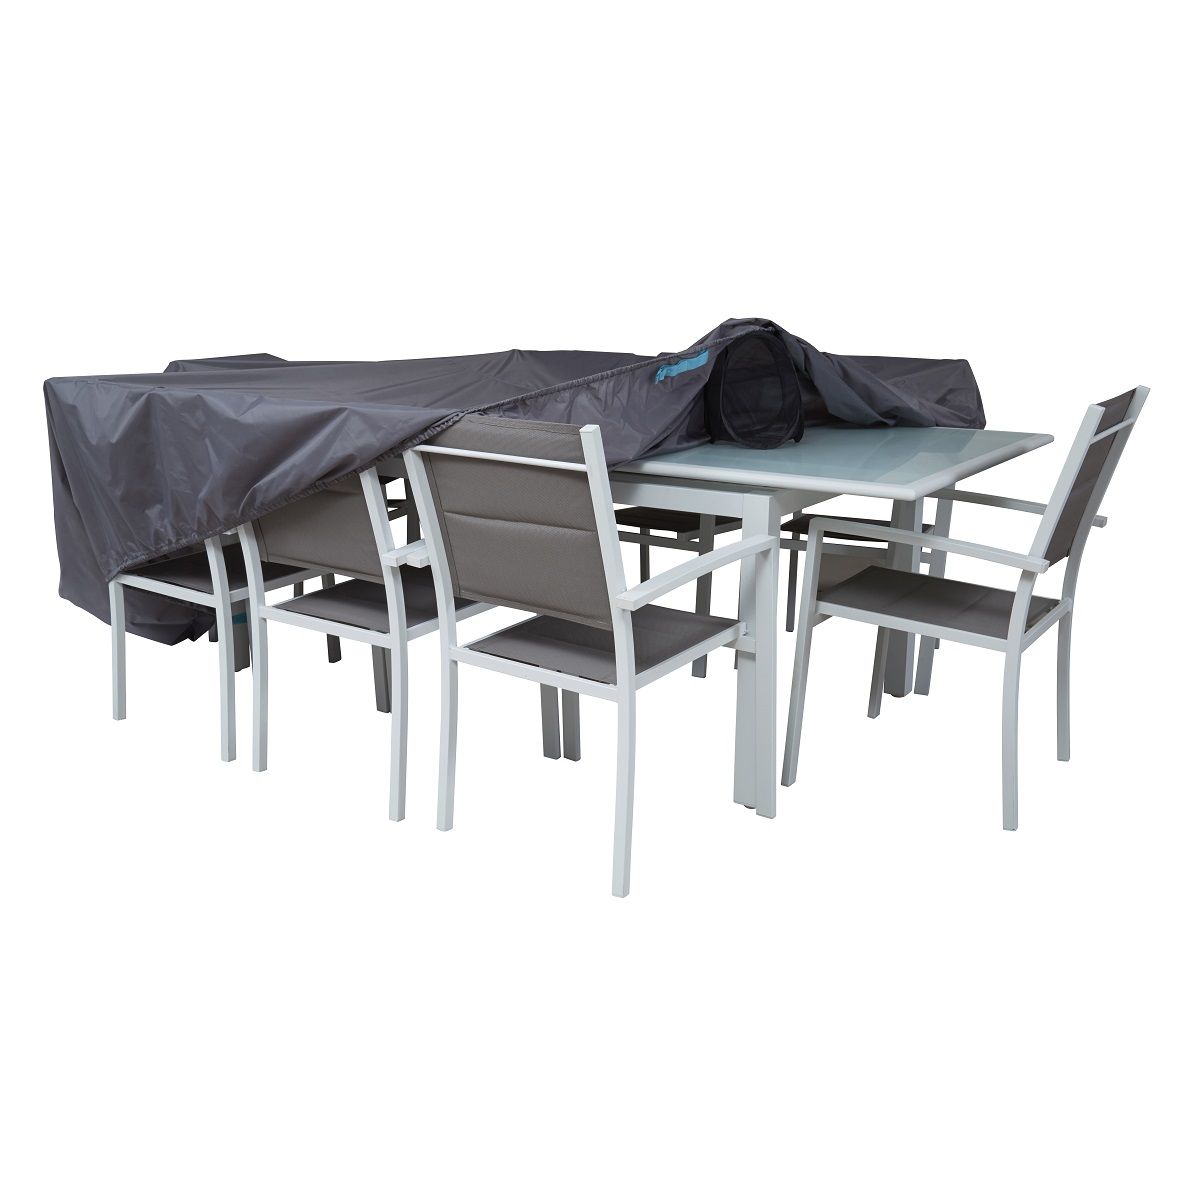 Housse URBAN 310x130x60cm polyester pour table de jardin